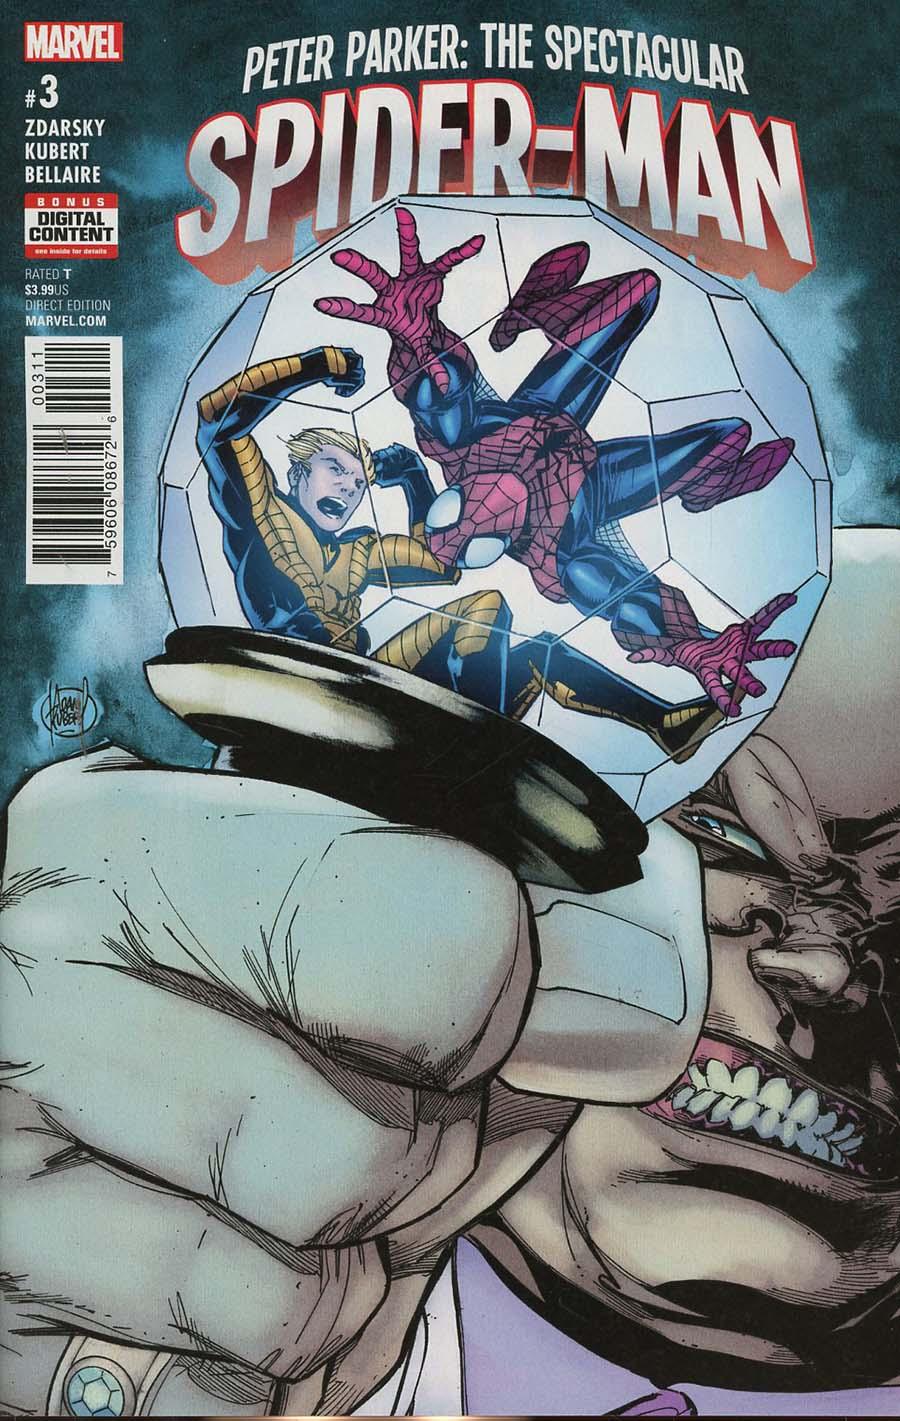 Peter Parker Spectacular Spider-Man Vol. 1 #3